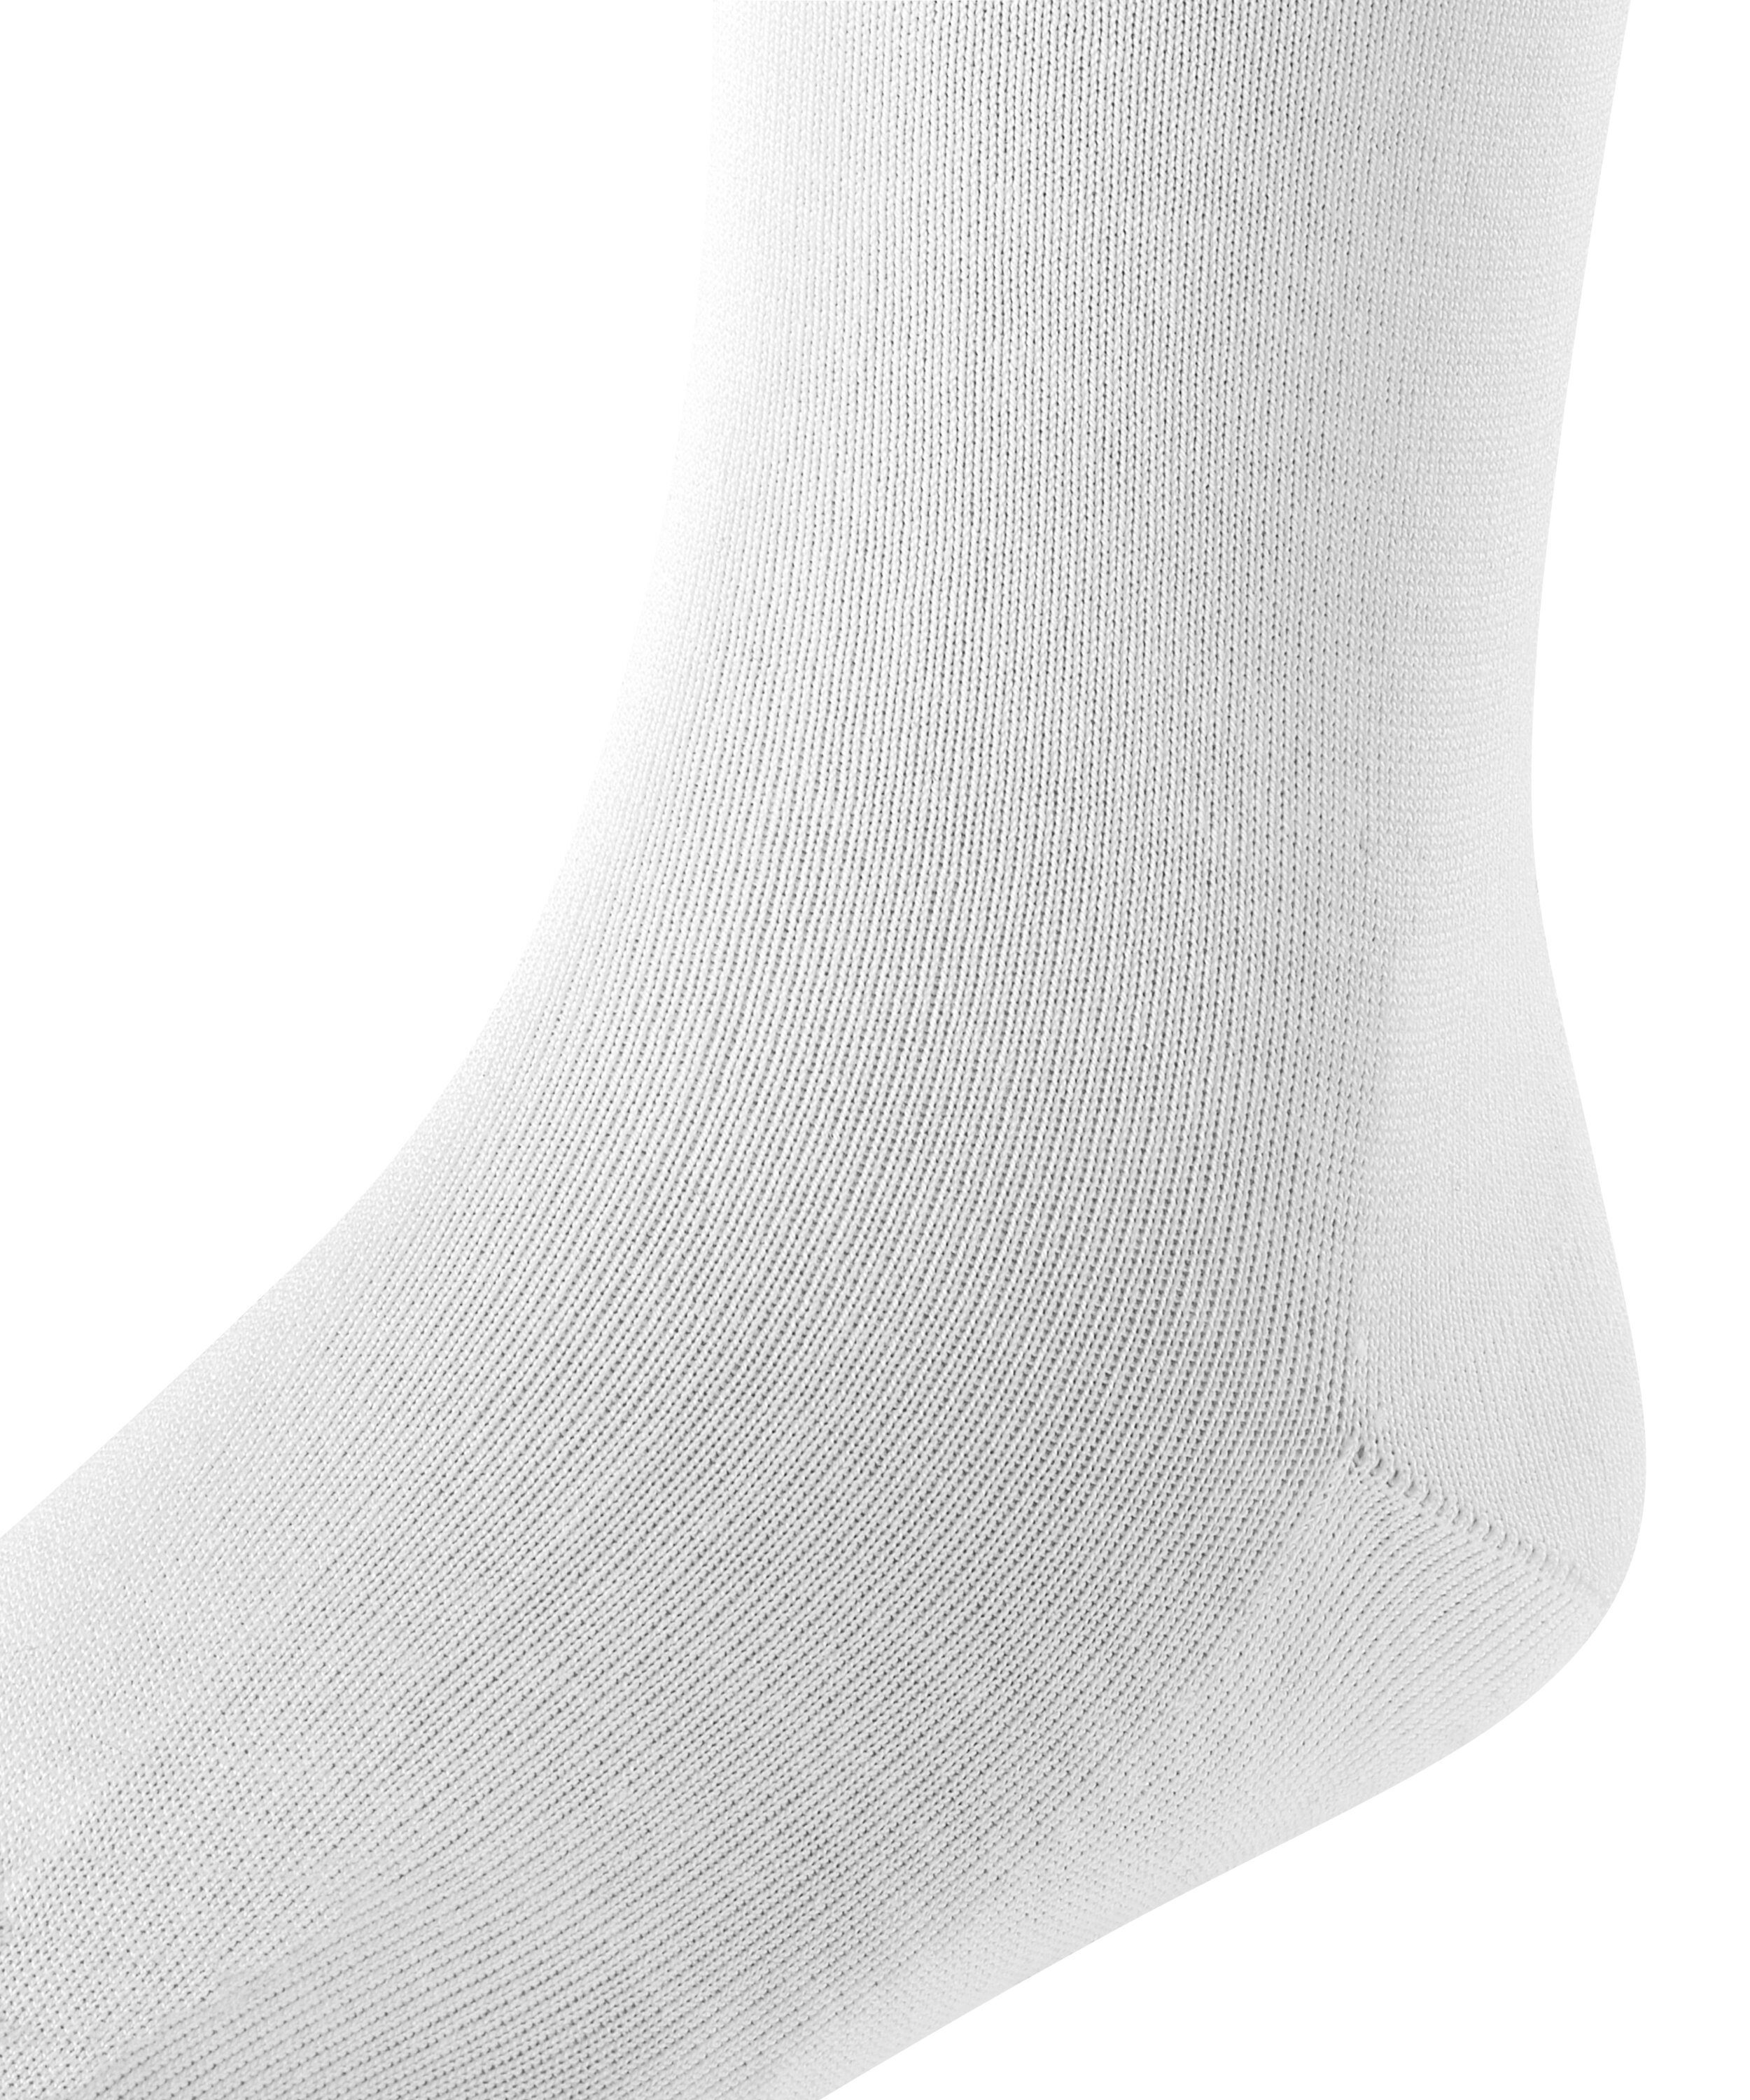 Finesse white FALKE Cotton (1-Paar) (2000) Socken